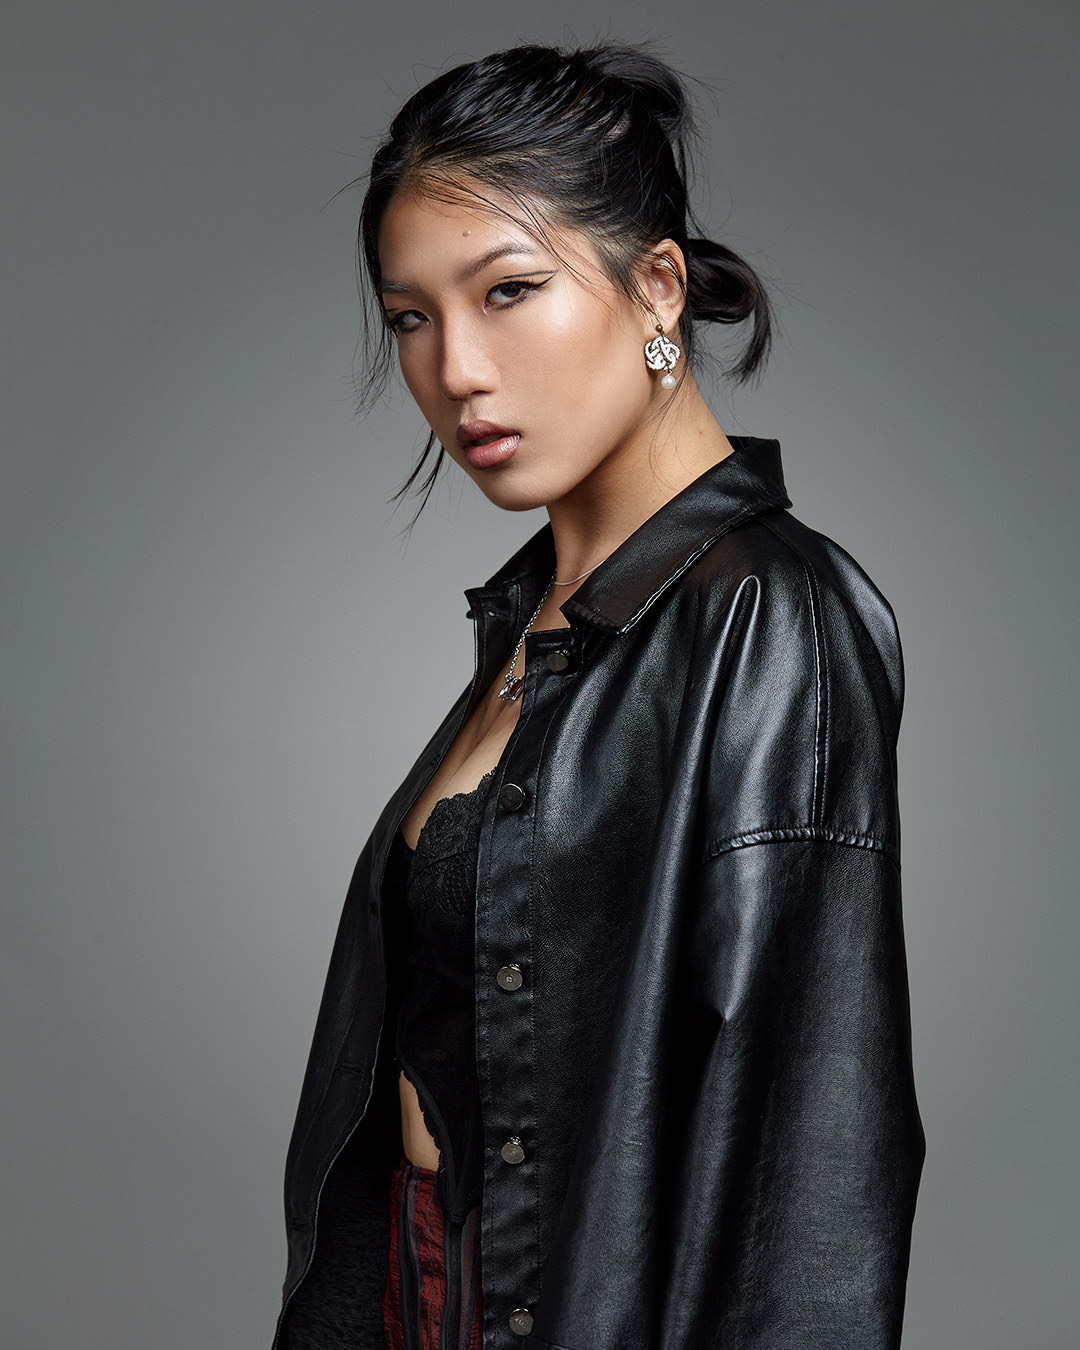 Grace Wei – RAZE Talent Agency